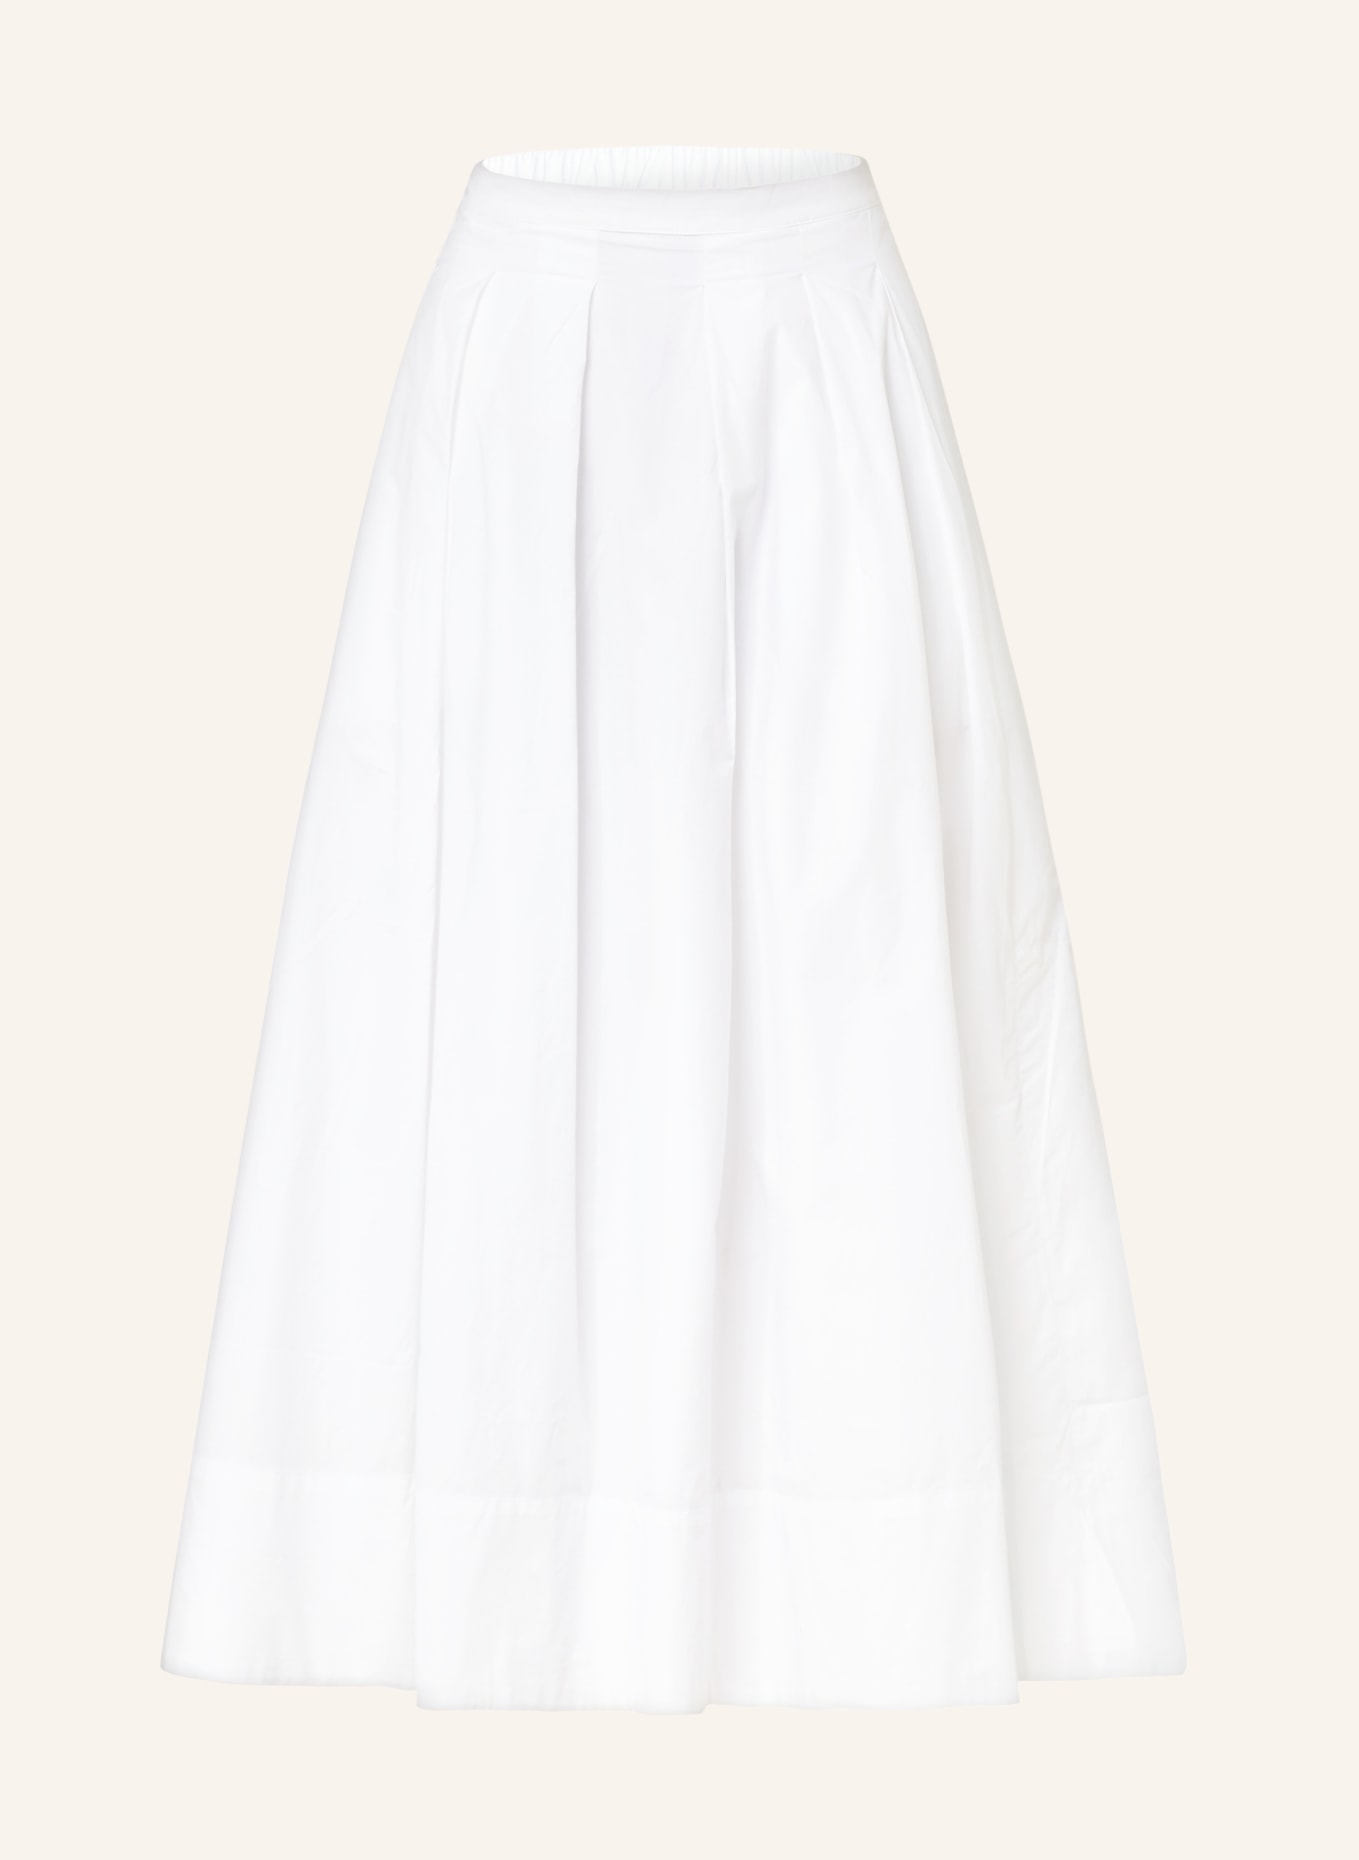 Herskind Skirt HERDIS, Color: WHITE (Image 1)